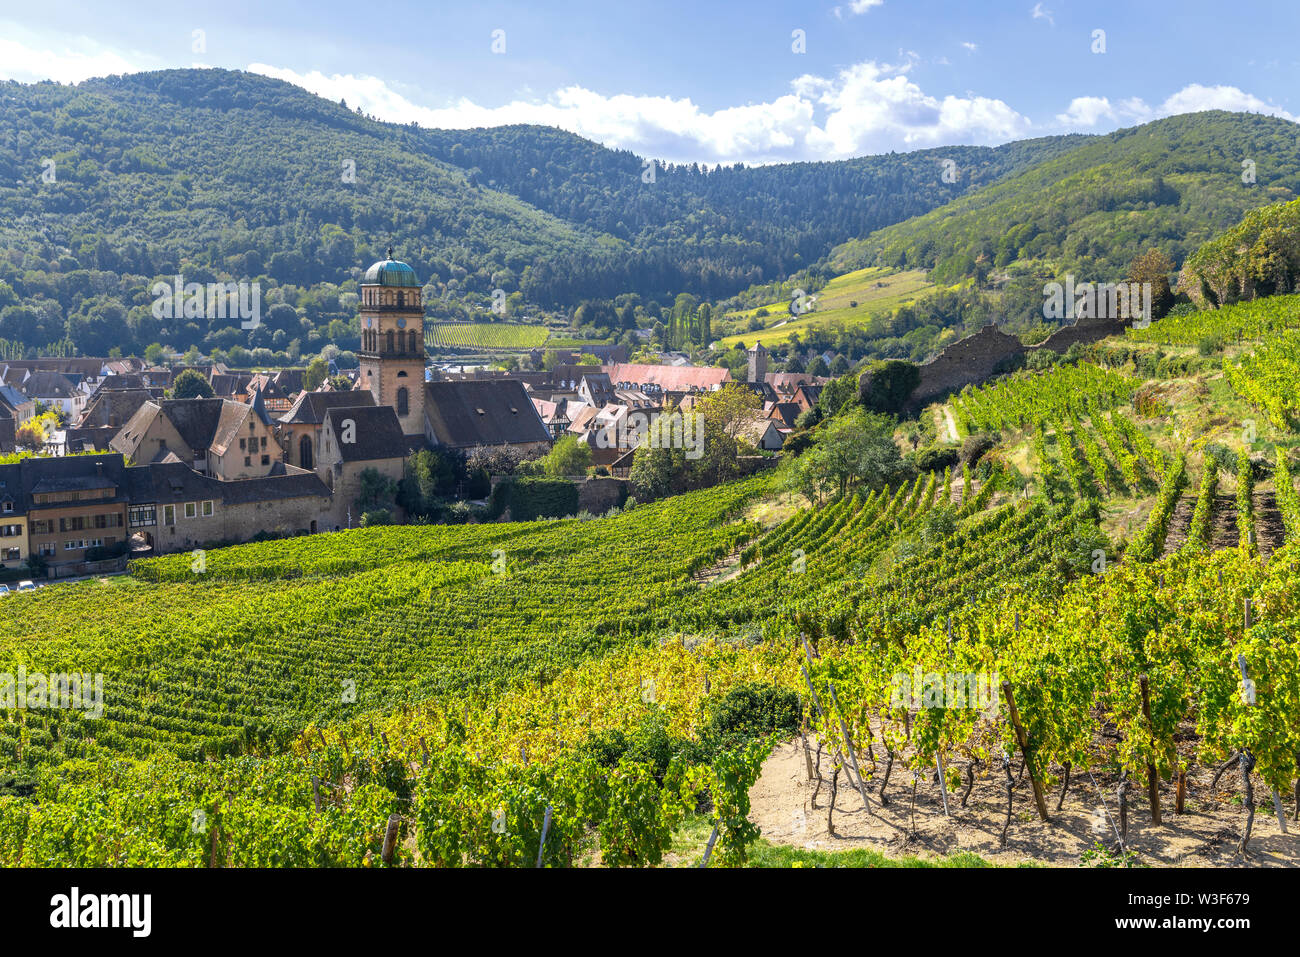 Ciudad Kaysersberg en medio de viñedos, la Ruta del Vino de Alsacia, Francia, las estribaciones de la Cordillera de los Vosgos Foto de stock